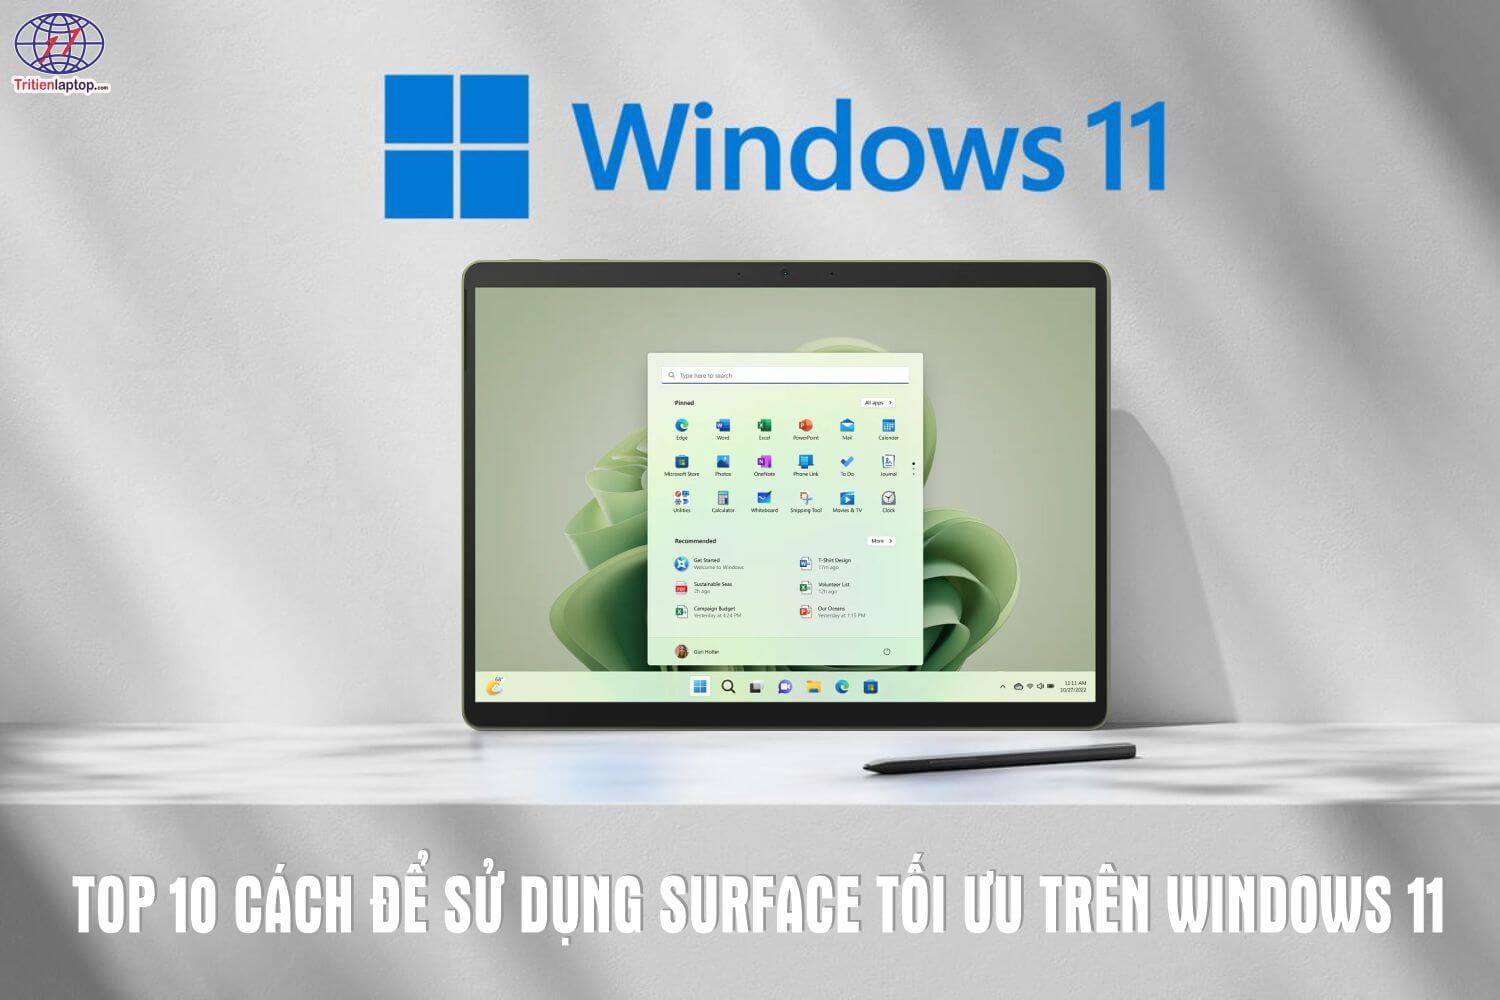 Top 10 cách để sử dụng Surface tối ưu trên Windows 11